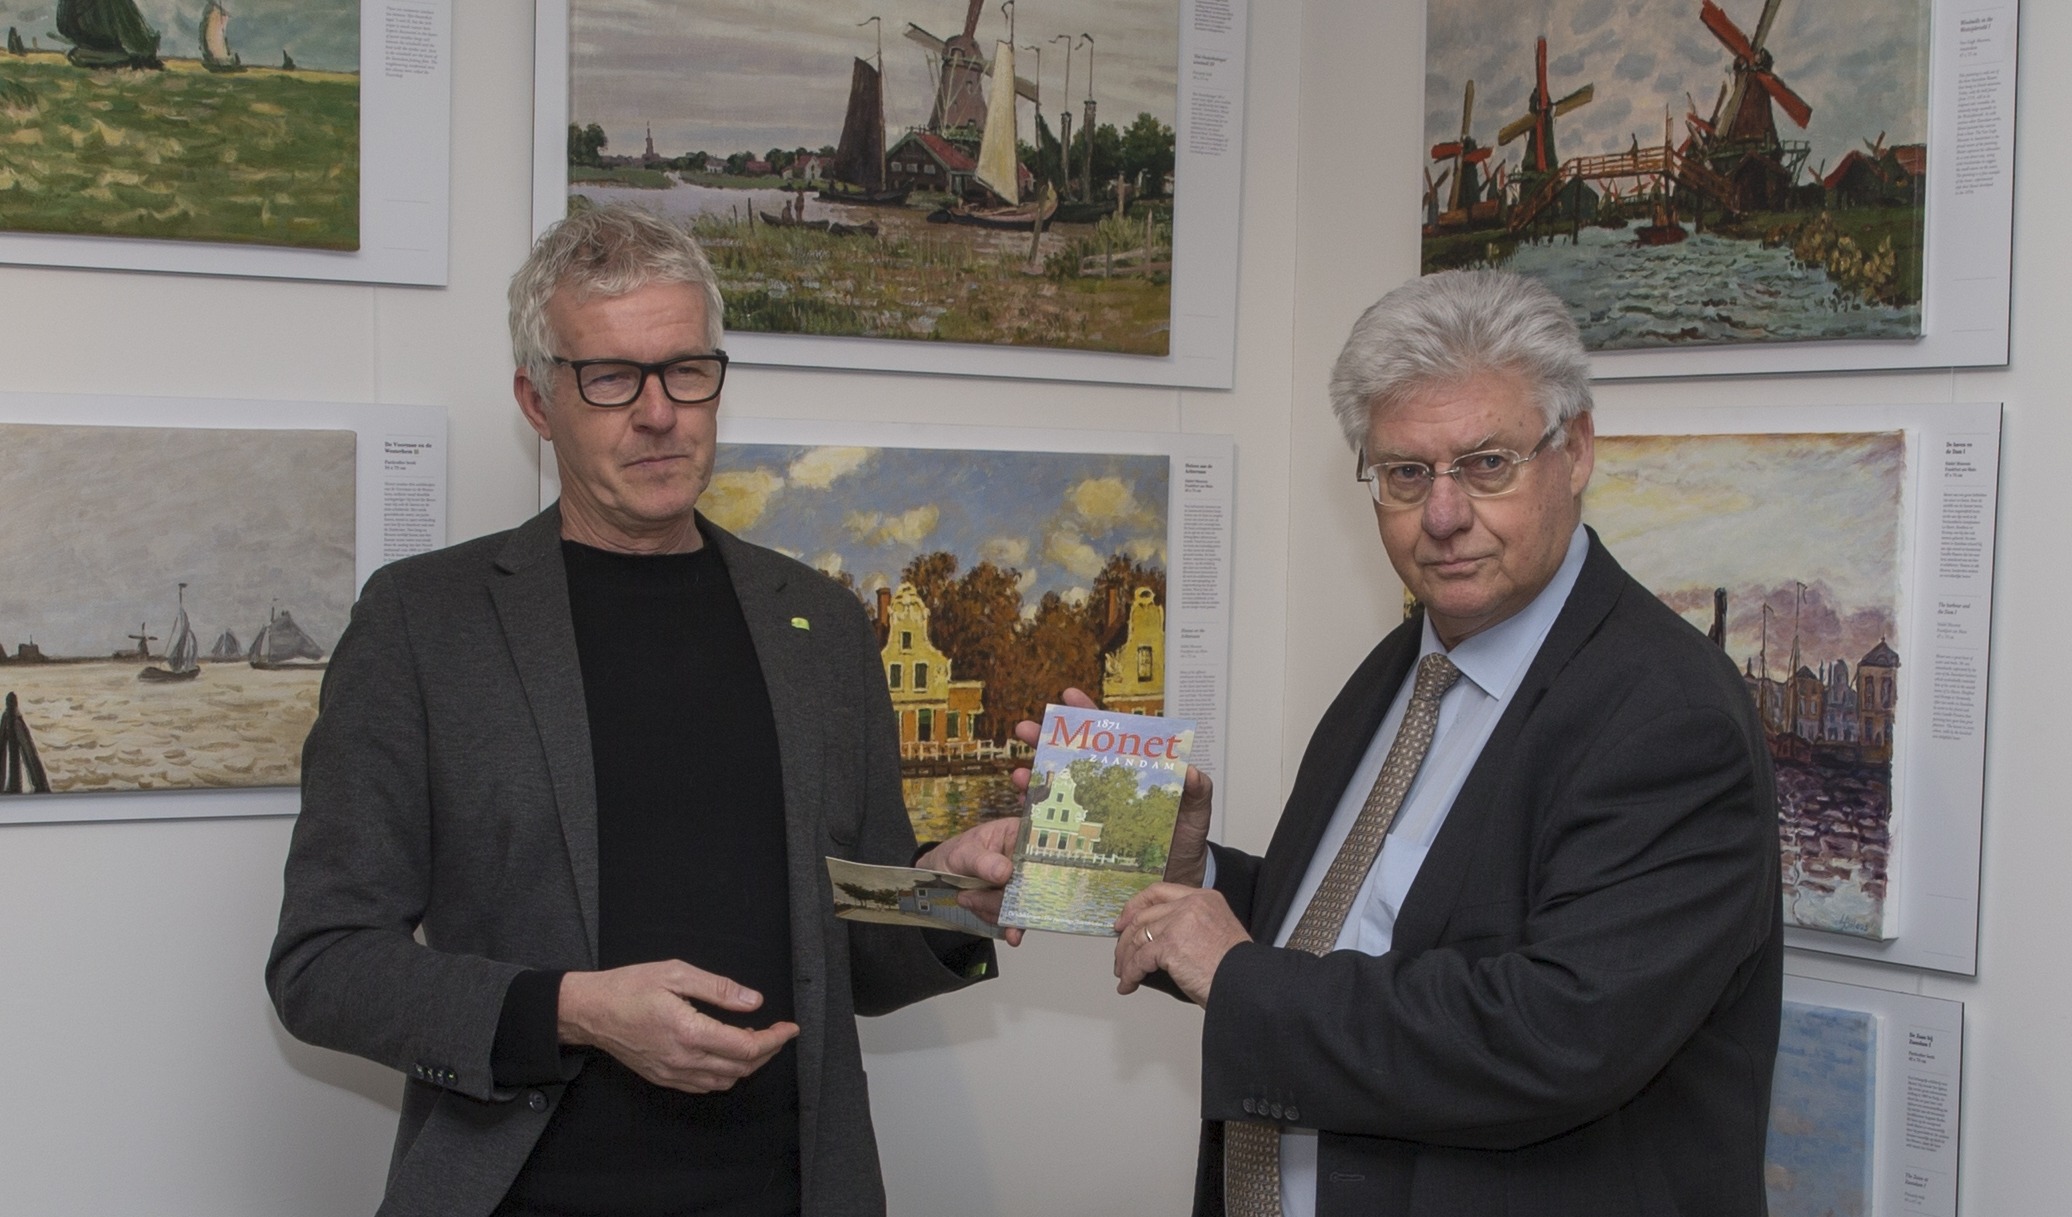 Waarnemend burgemeester van Zaanstad Ruud Vreeman ontvant het eerste exemplaar van Gert Schouten, voorzitter van de Stichting Monet in Zaandam